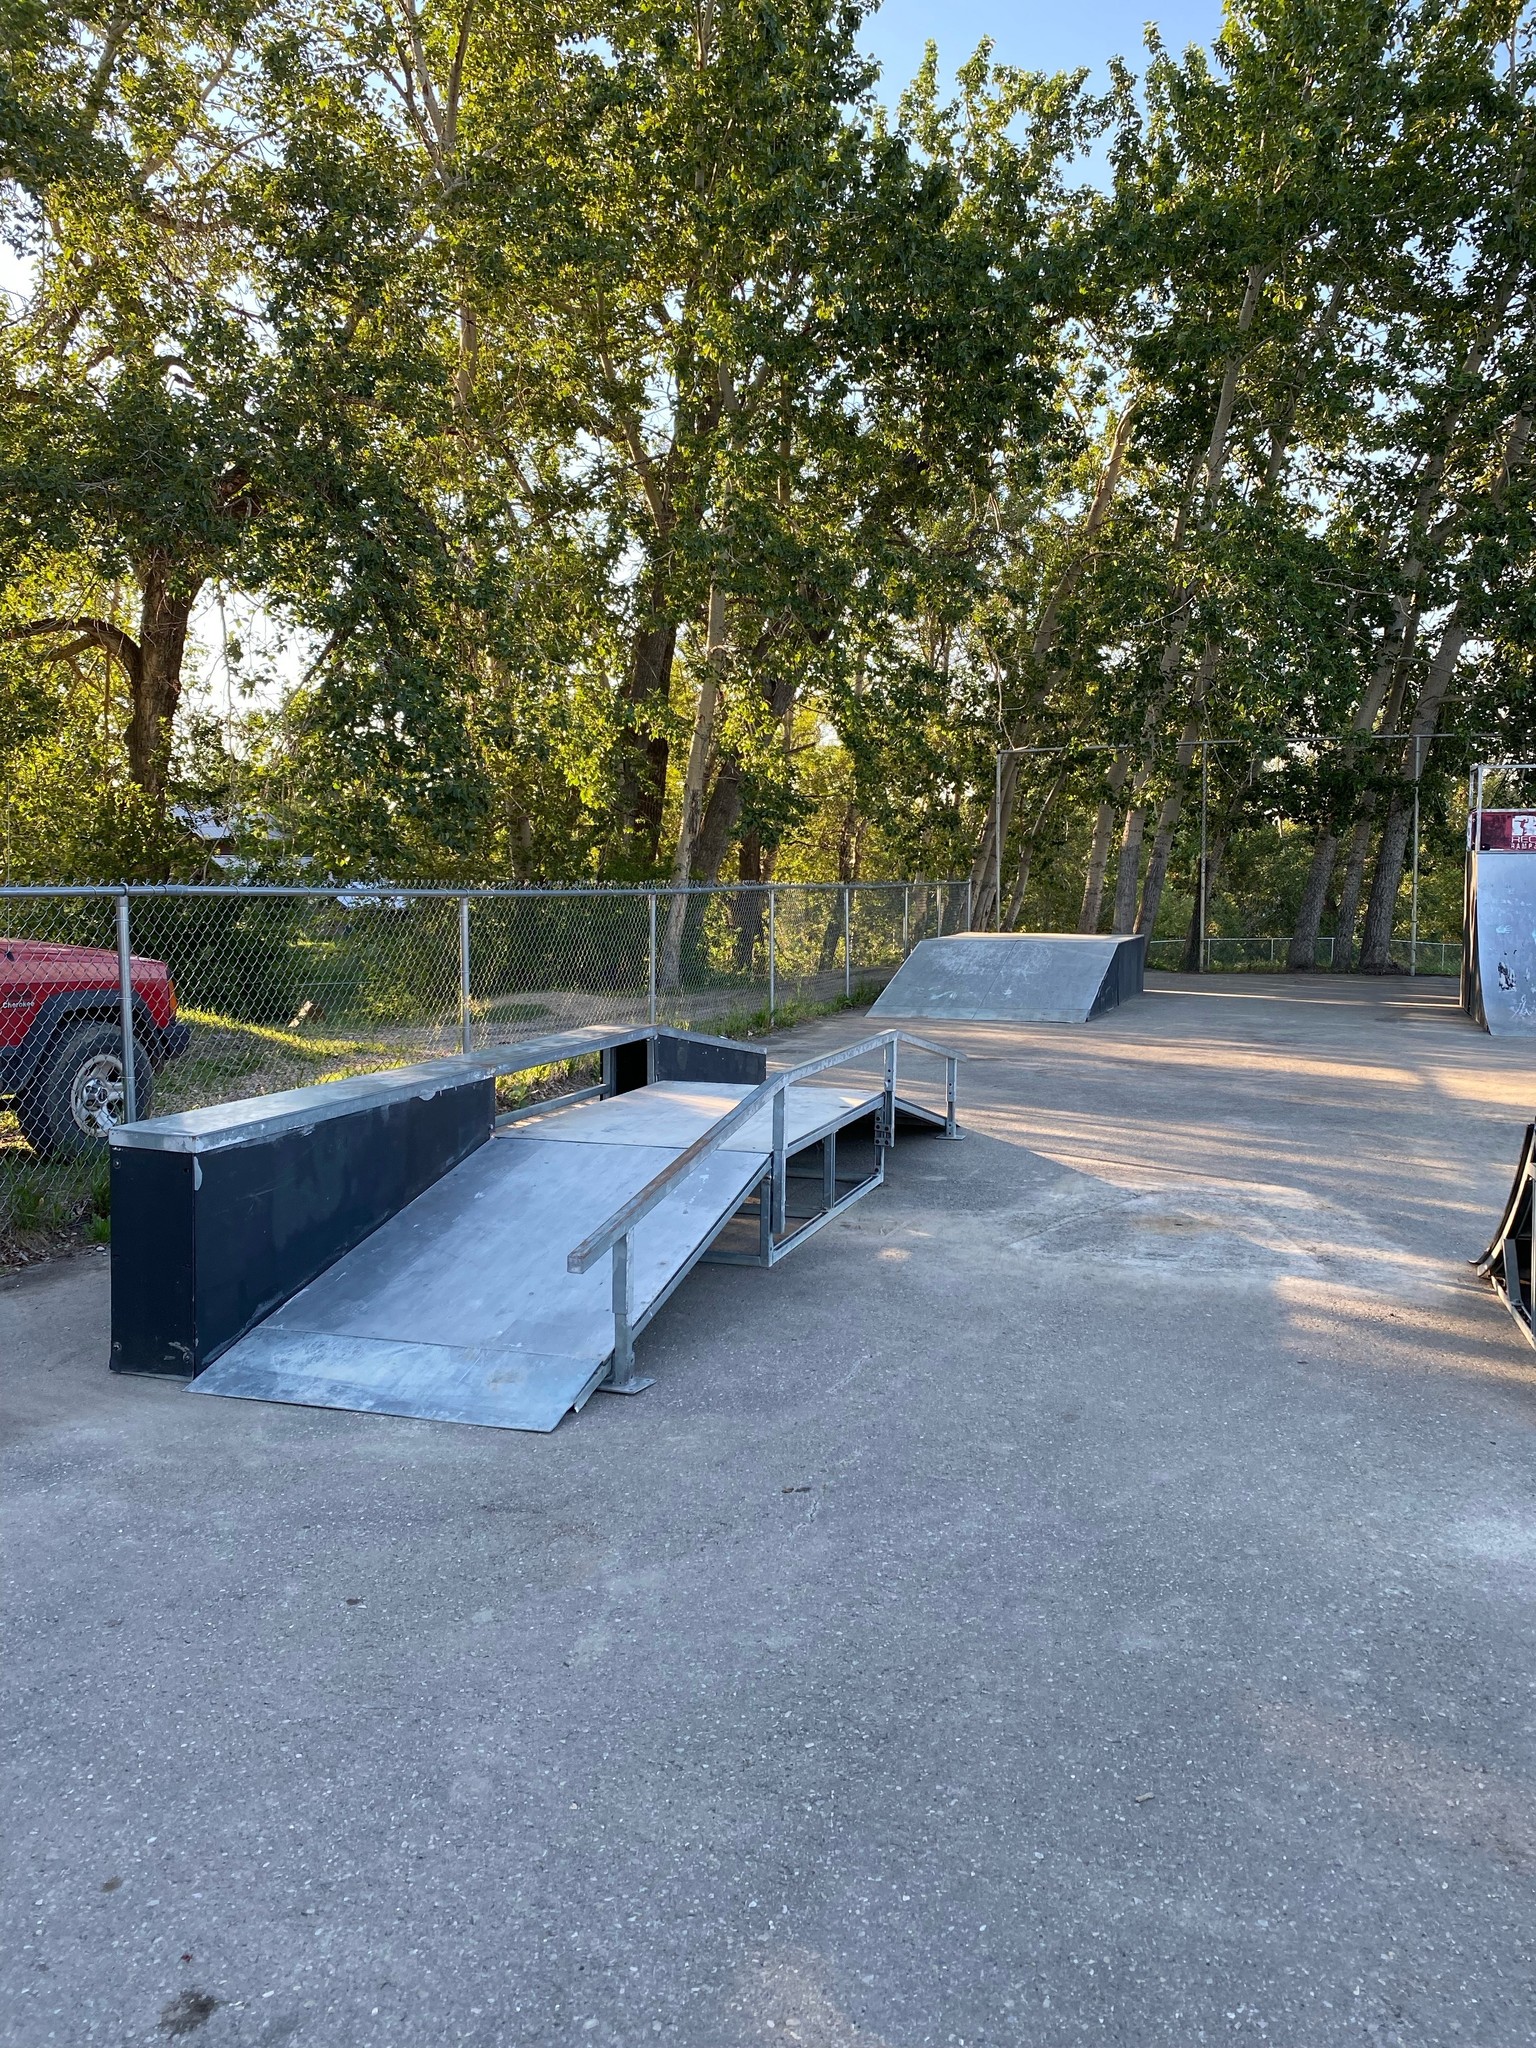 Pincher creek skateboard ramps